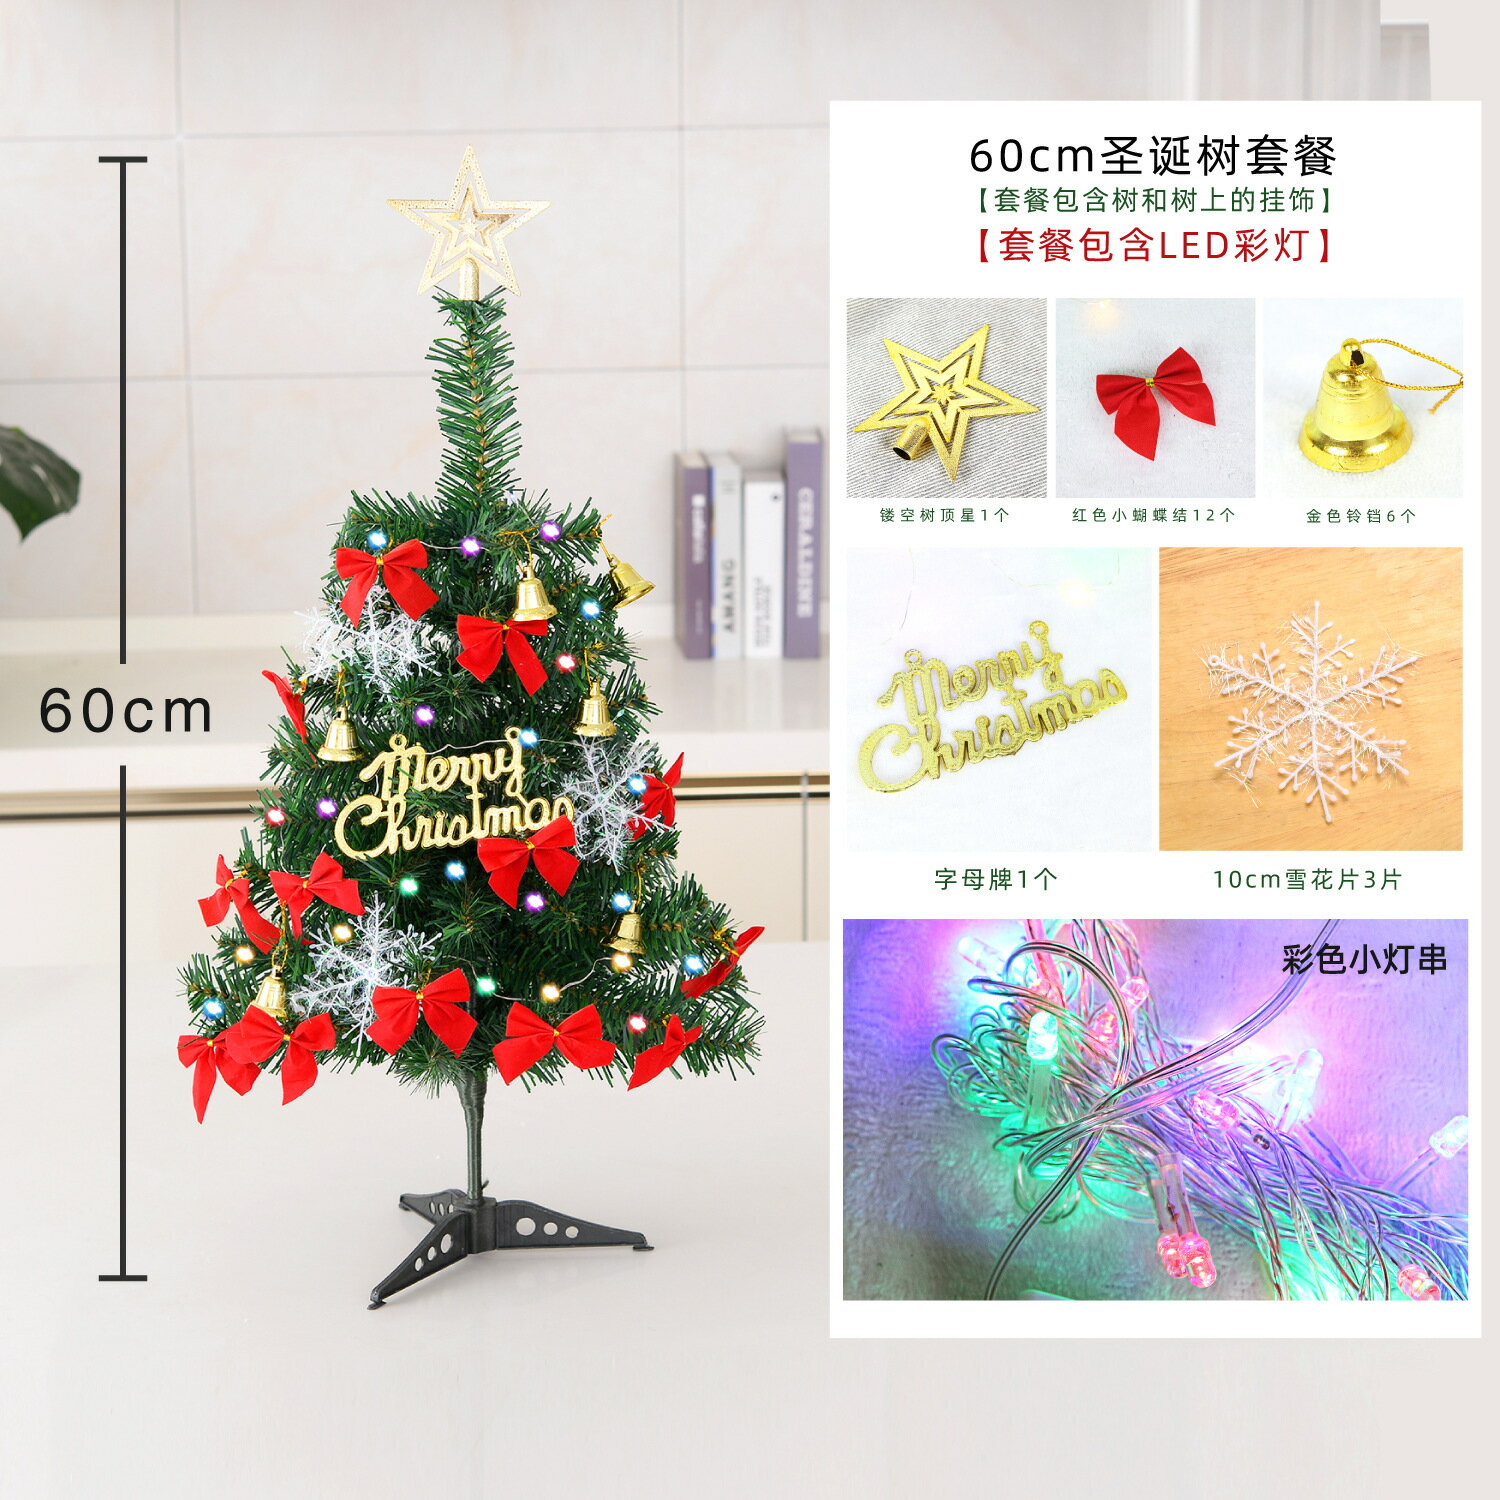 聖誕樹套餐 普通綠樹 聖誕樹 DIY 耶誕節 聖誕佈置 聖誕節 0.6米/1.2米/1.5米/1.8米/2.1米